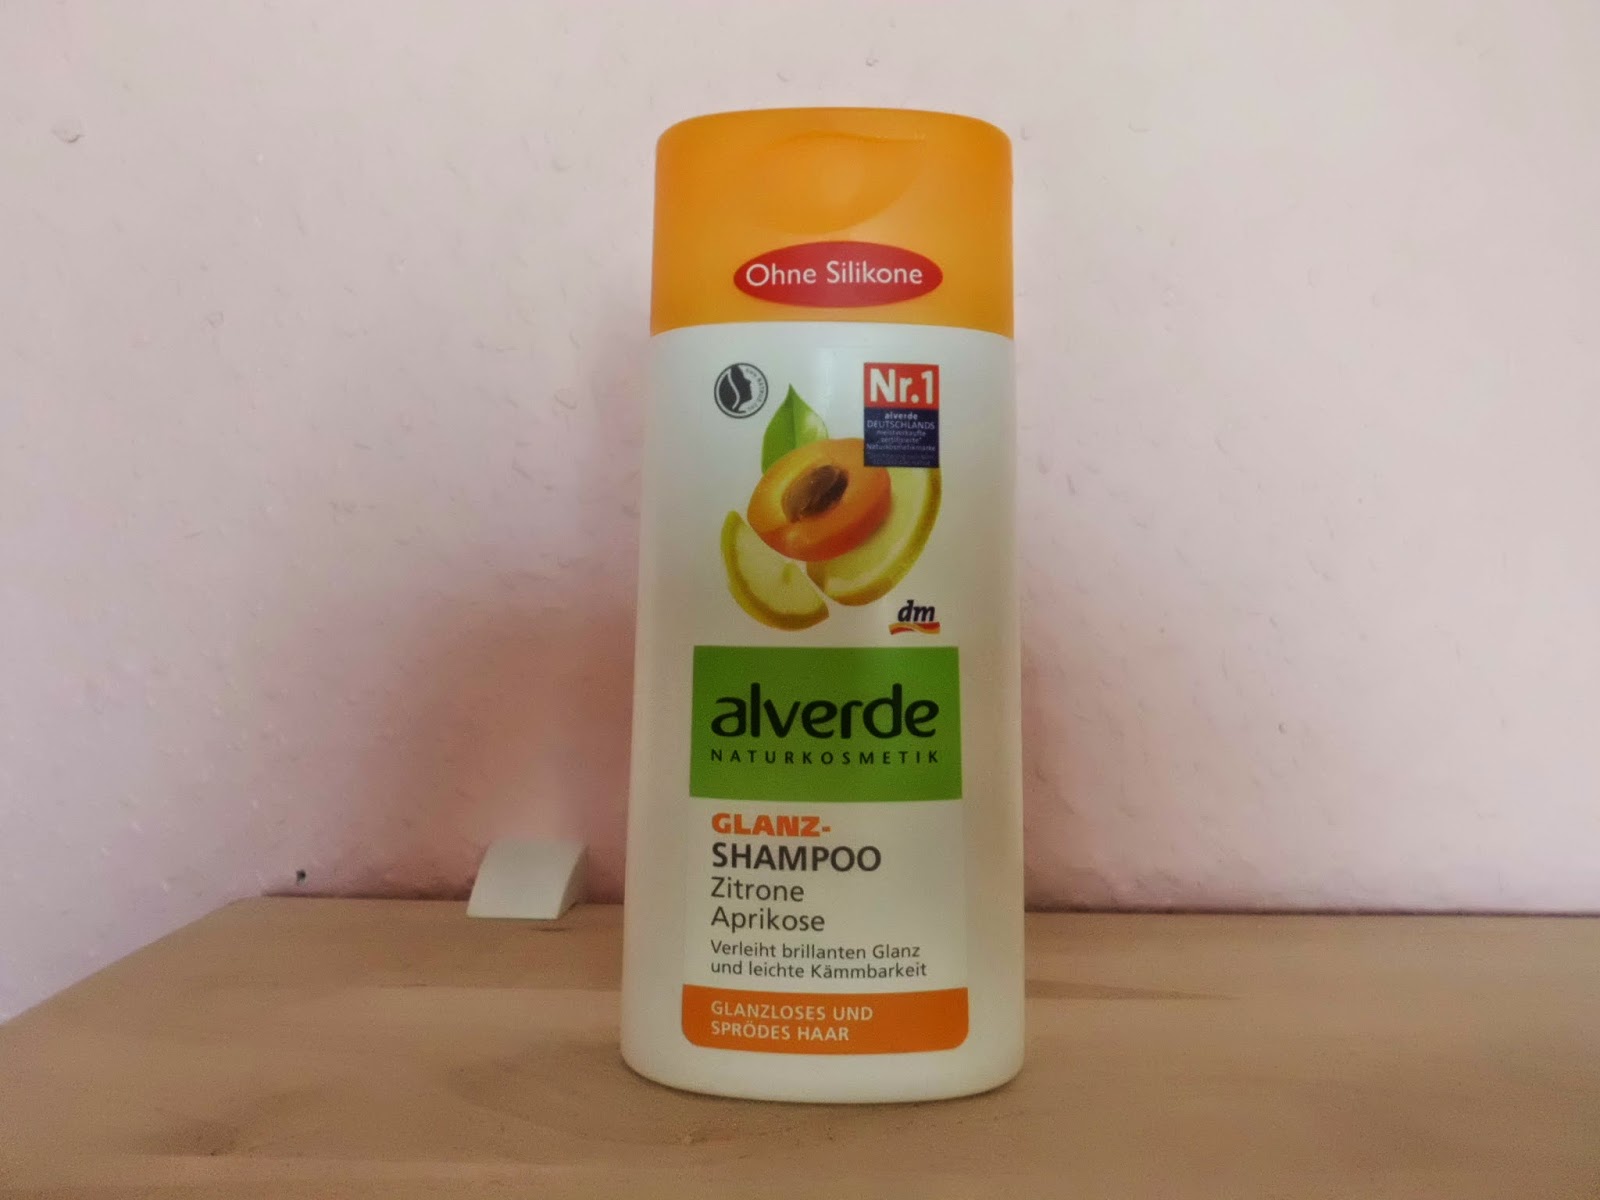 Zwei Sind Besser Als Eine Shampoo Review Zitrone Aprikose Von Alverde